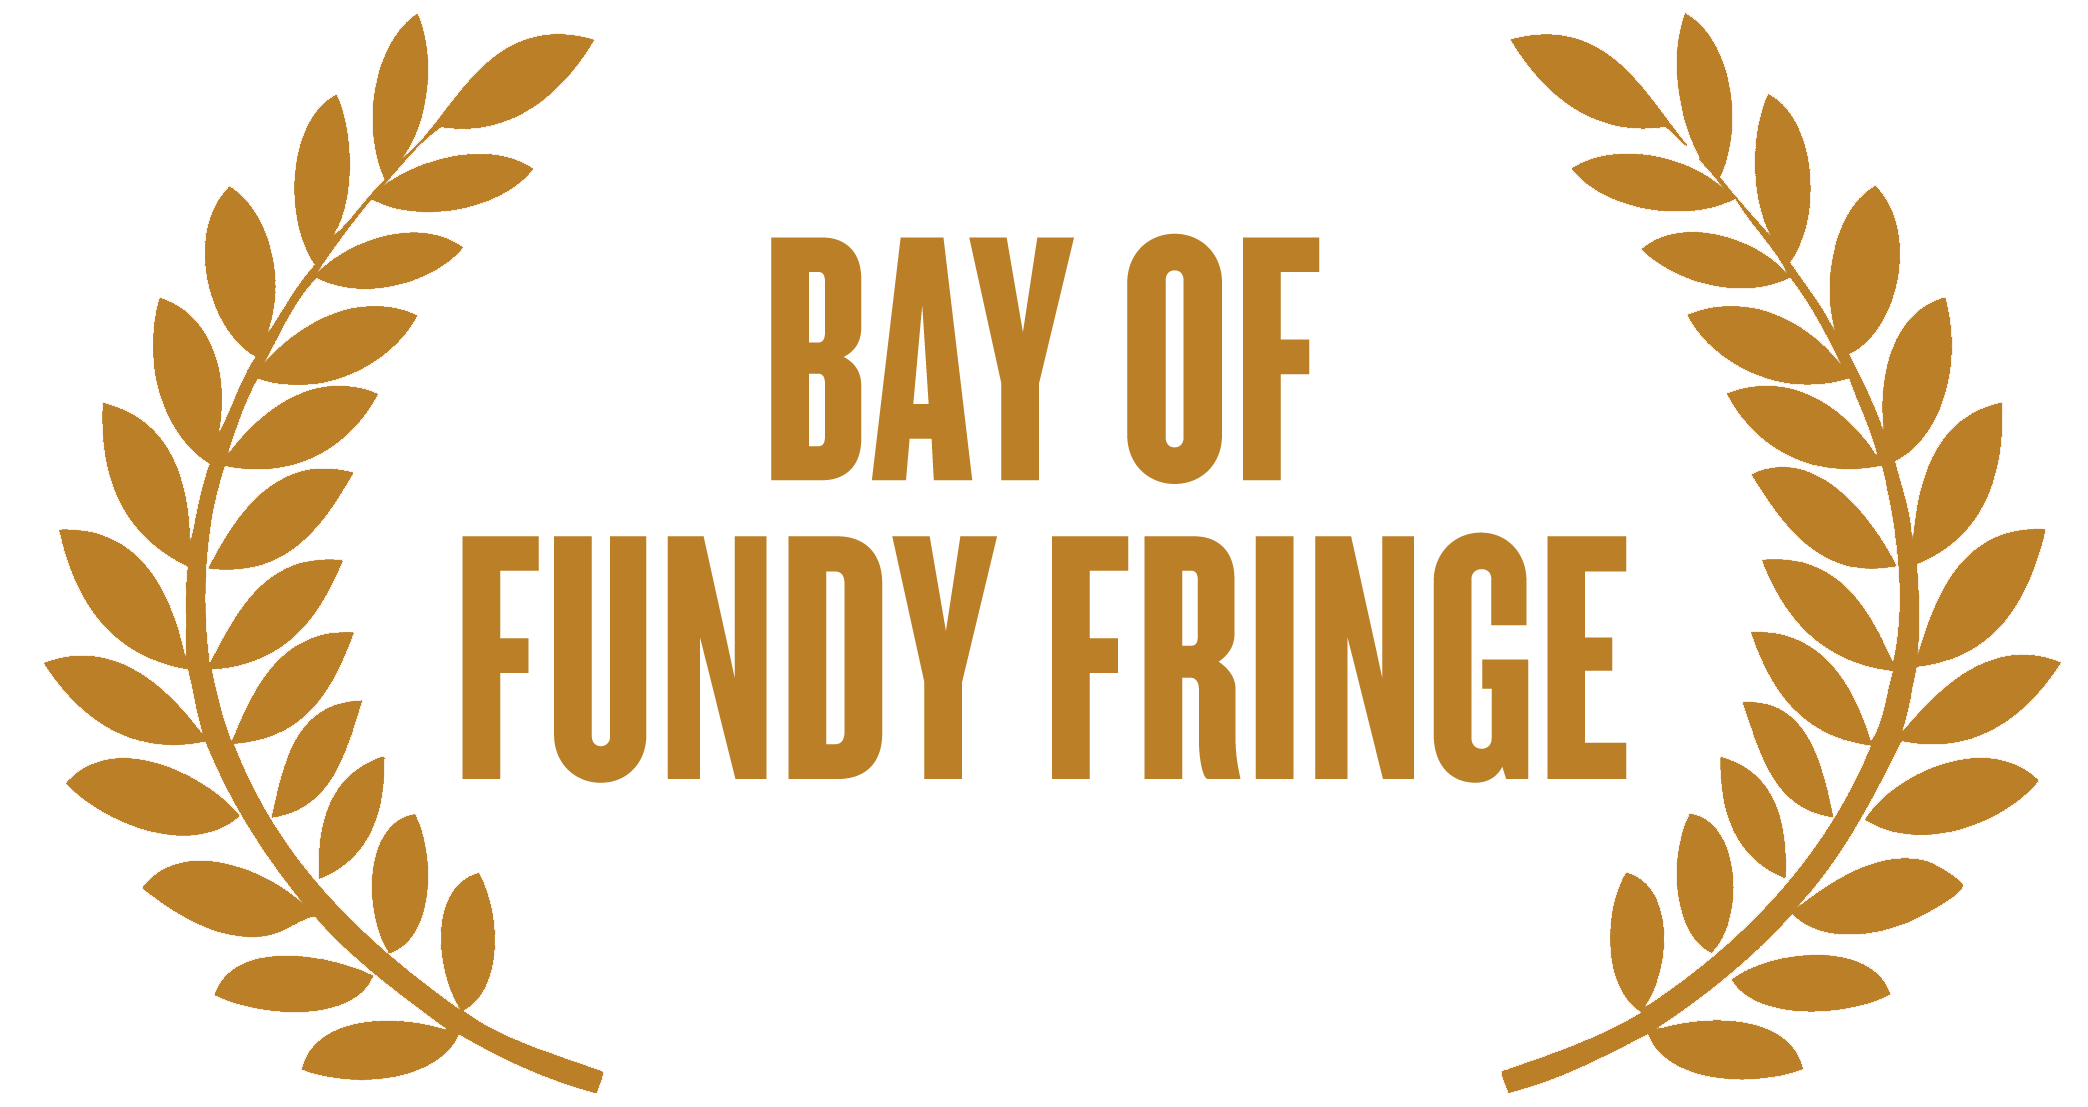 bay-fundy-fringe.png